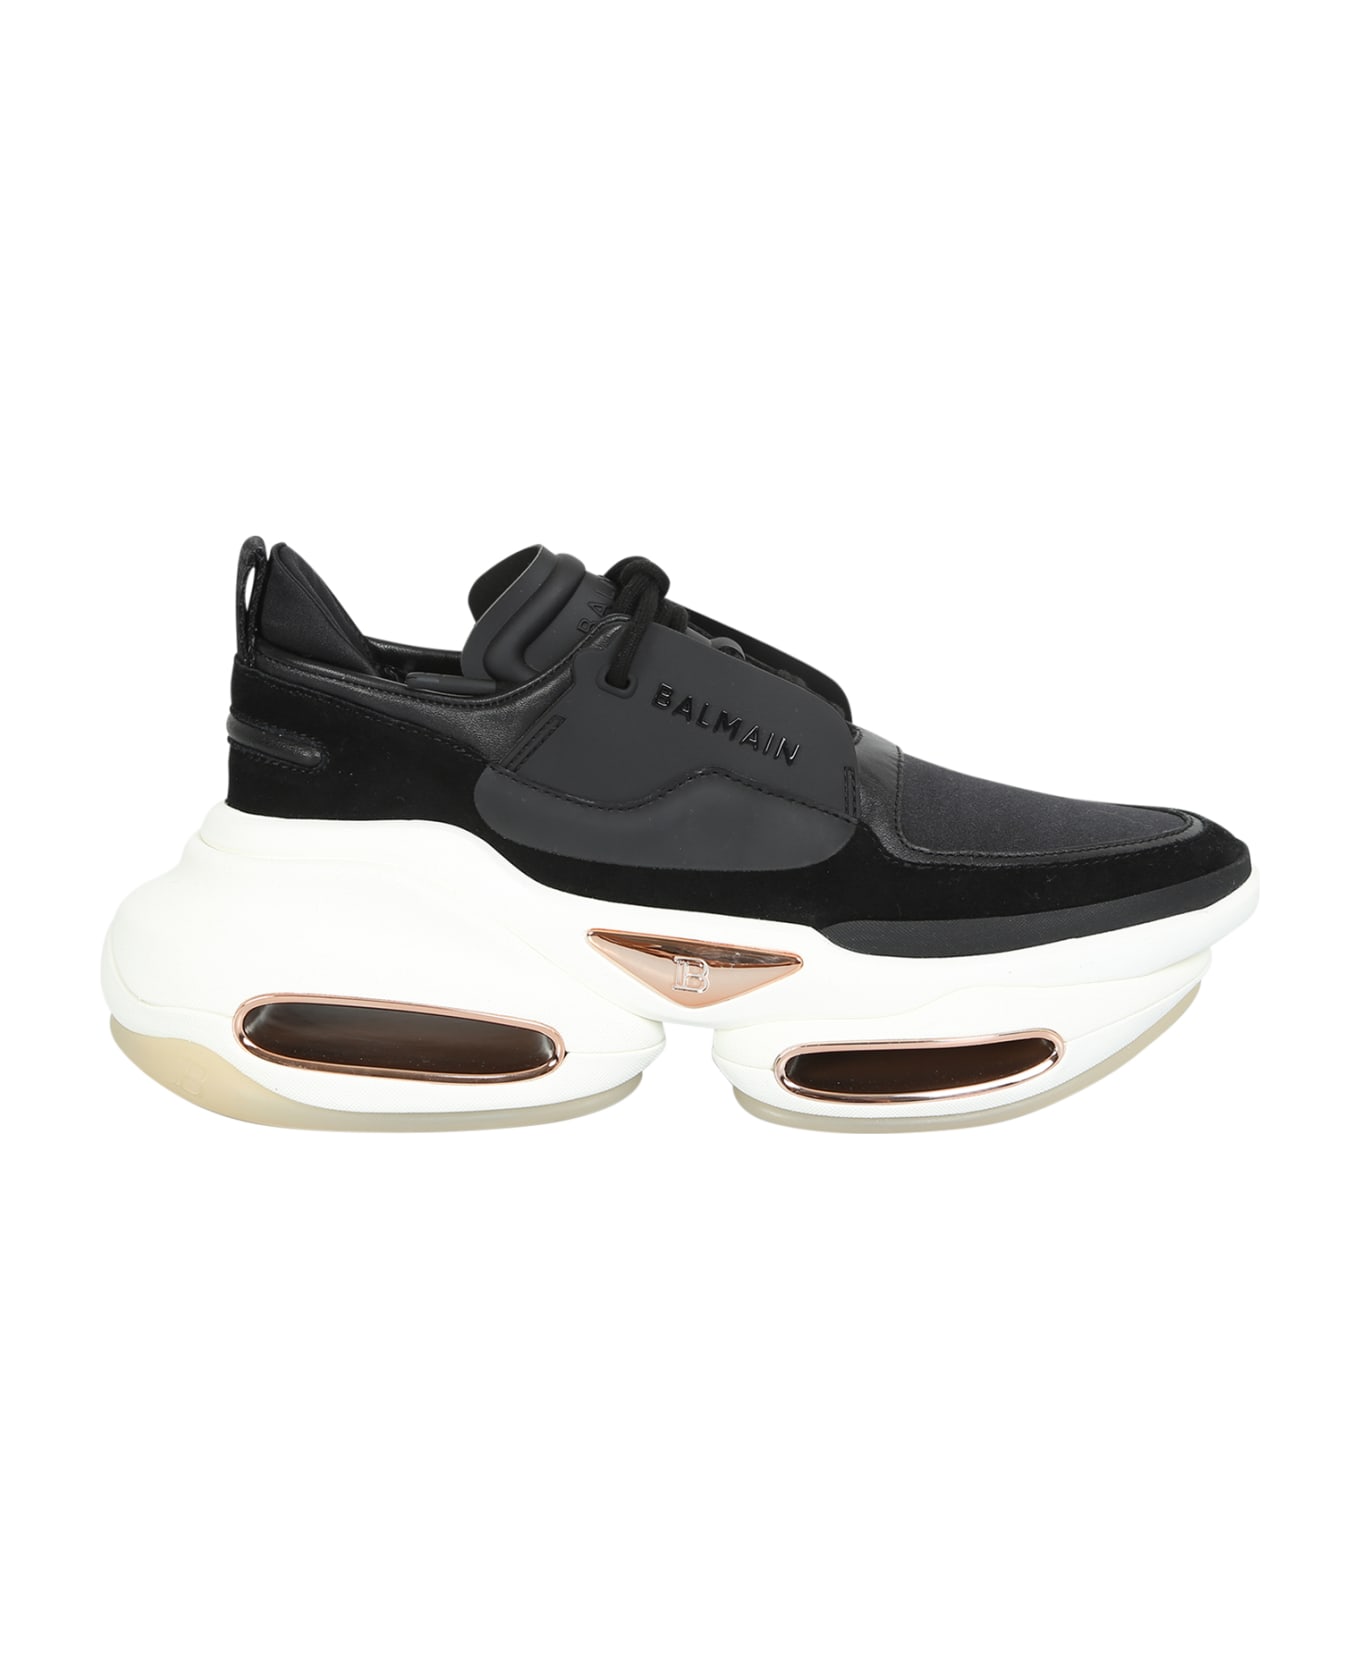 Balmain B-bold Low-top Sneakers - Black スニーカー